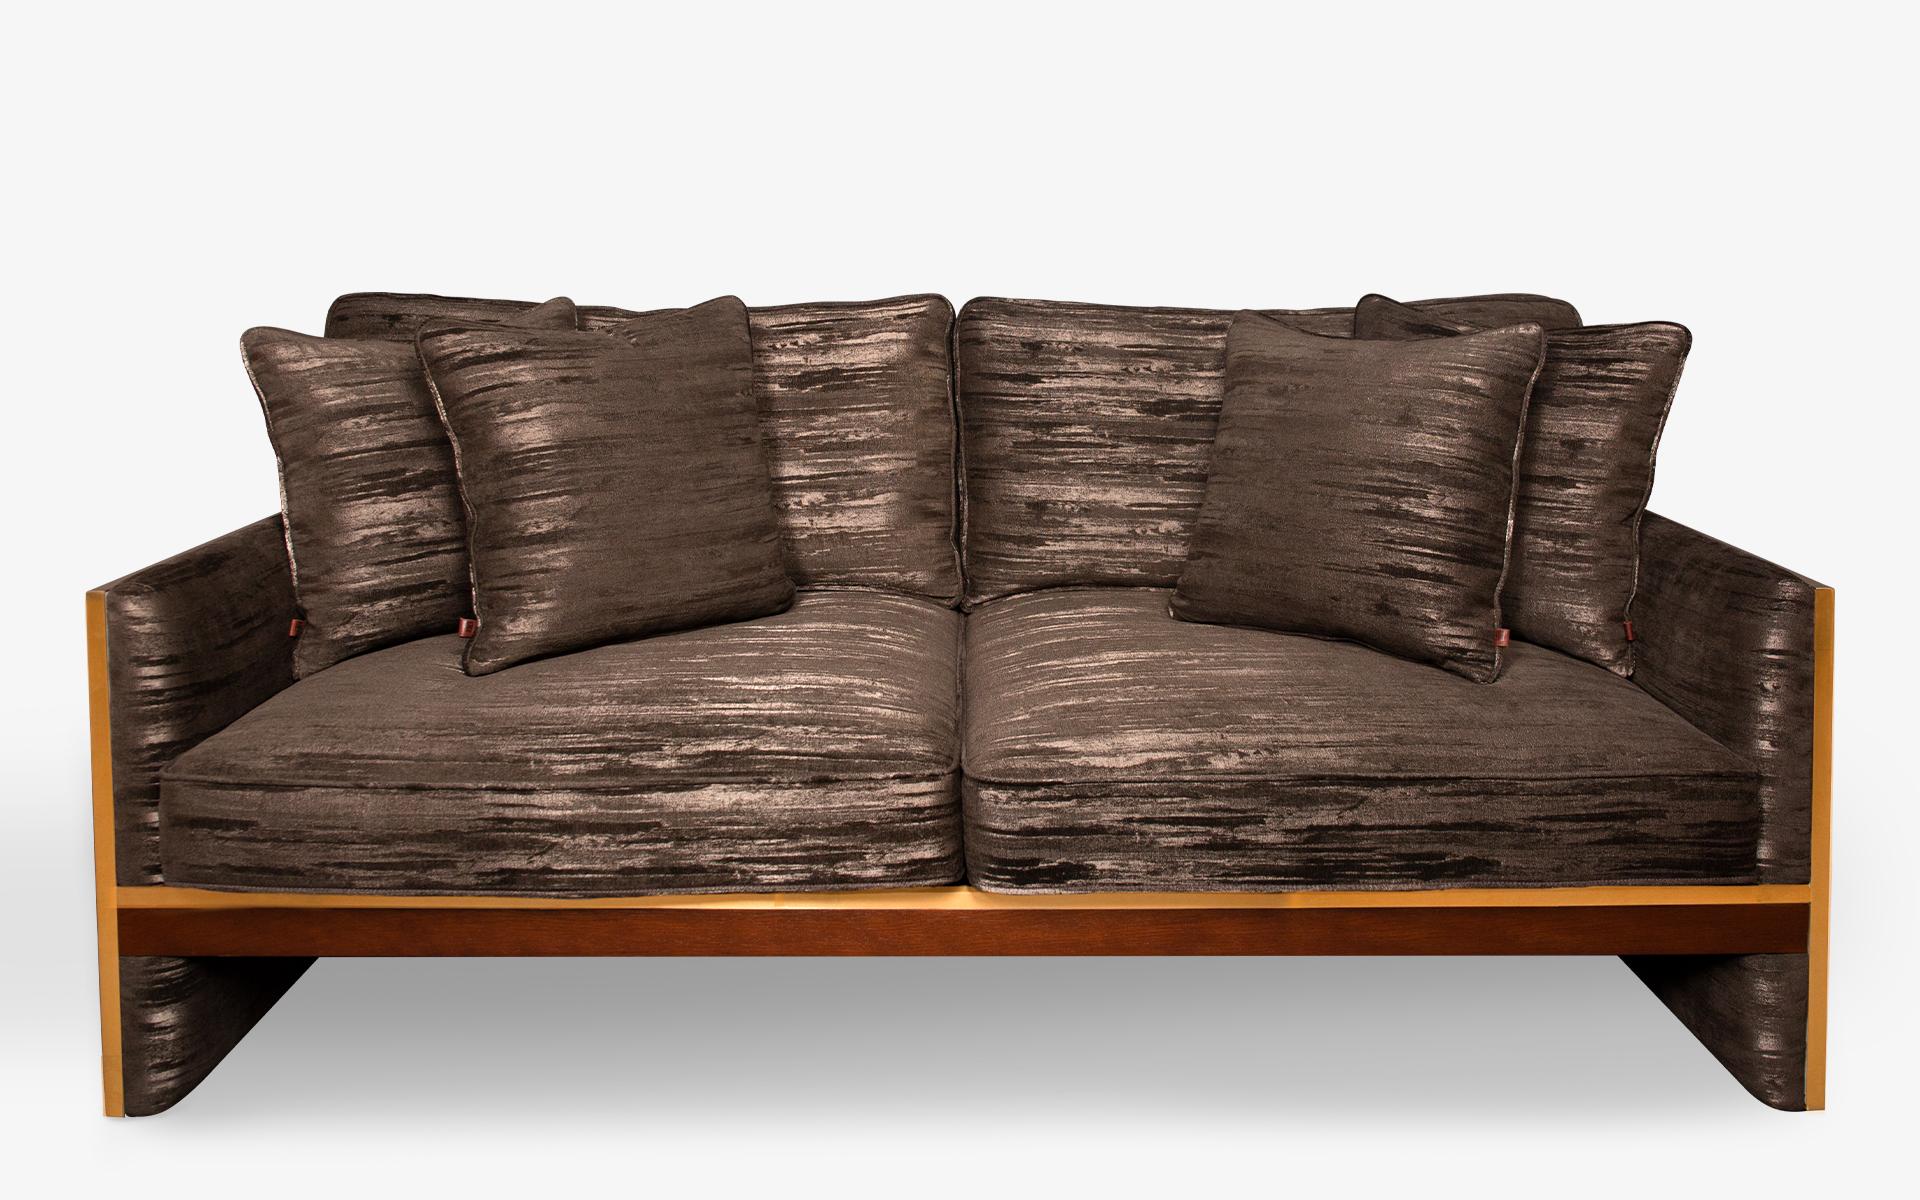 Das Famed Zweisitzer-Sofa kombiniert harmonisch Stoff mit Messing und verleiht Ihrem Raum einen Hauch von Qualität...

MATERIALIEN:
-Brass 
-Erle erster Güte
-Erstklassiges Eichenfurnier
-Eingetragenes Design

Alternativen:
-Messing / Mattchrom /